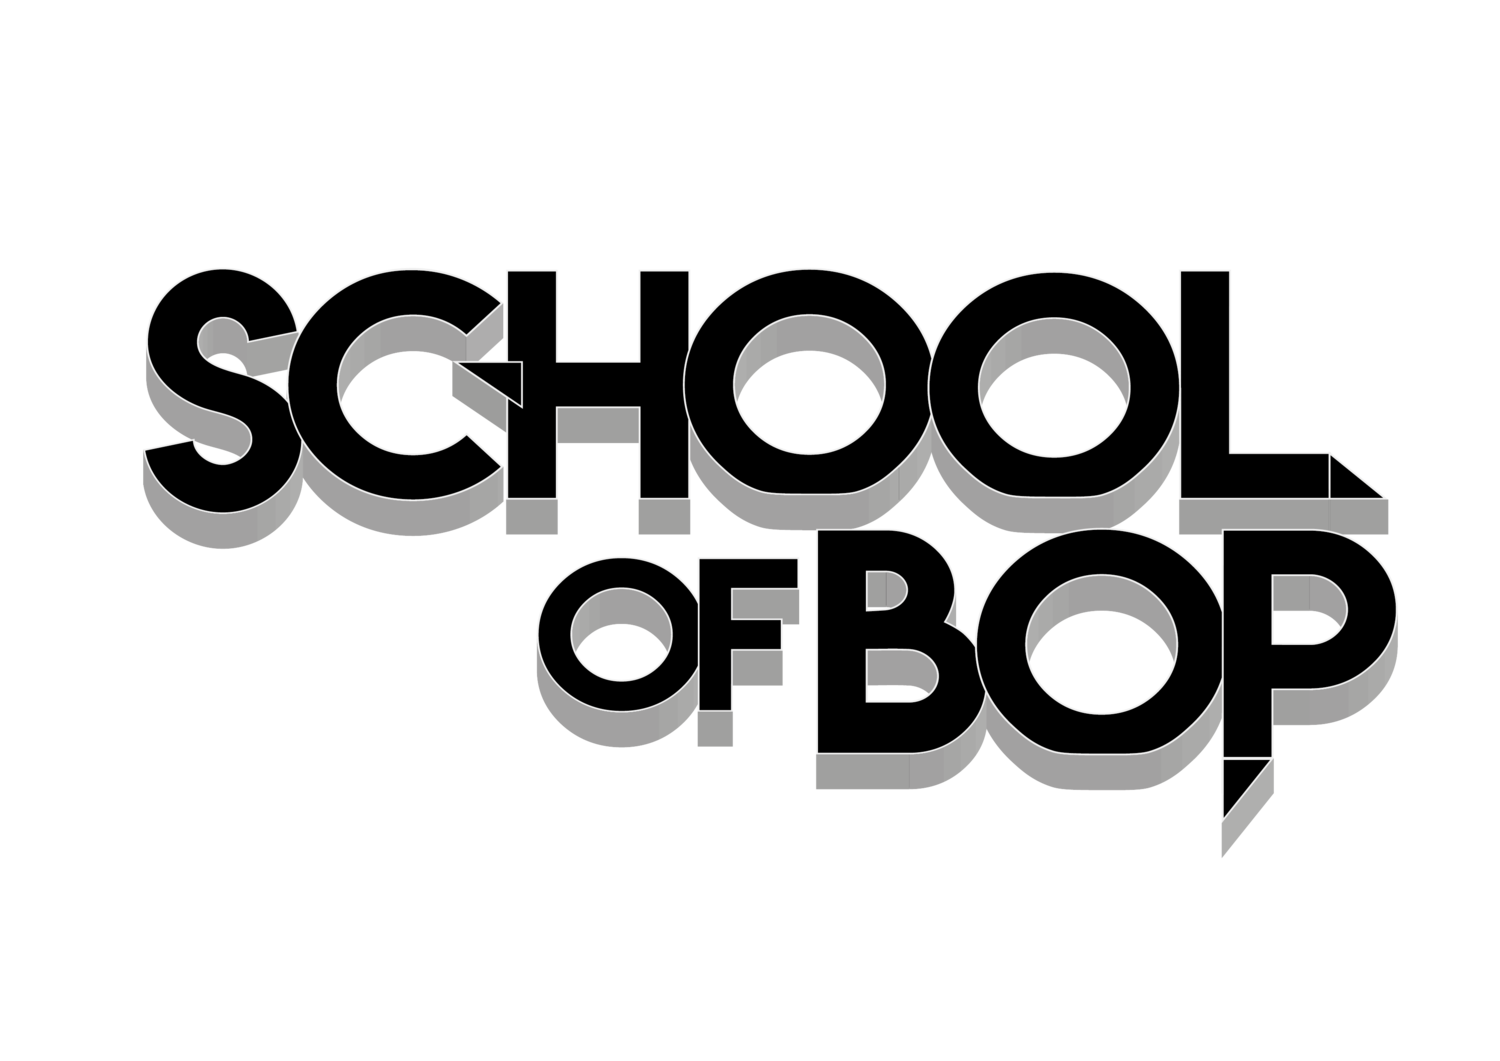 School of Bop